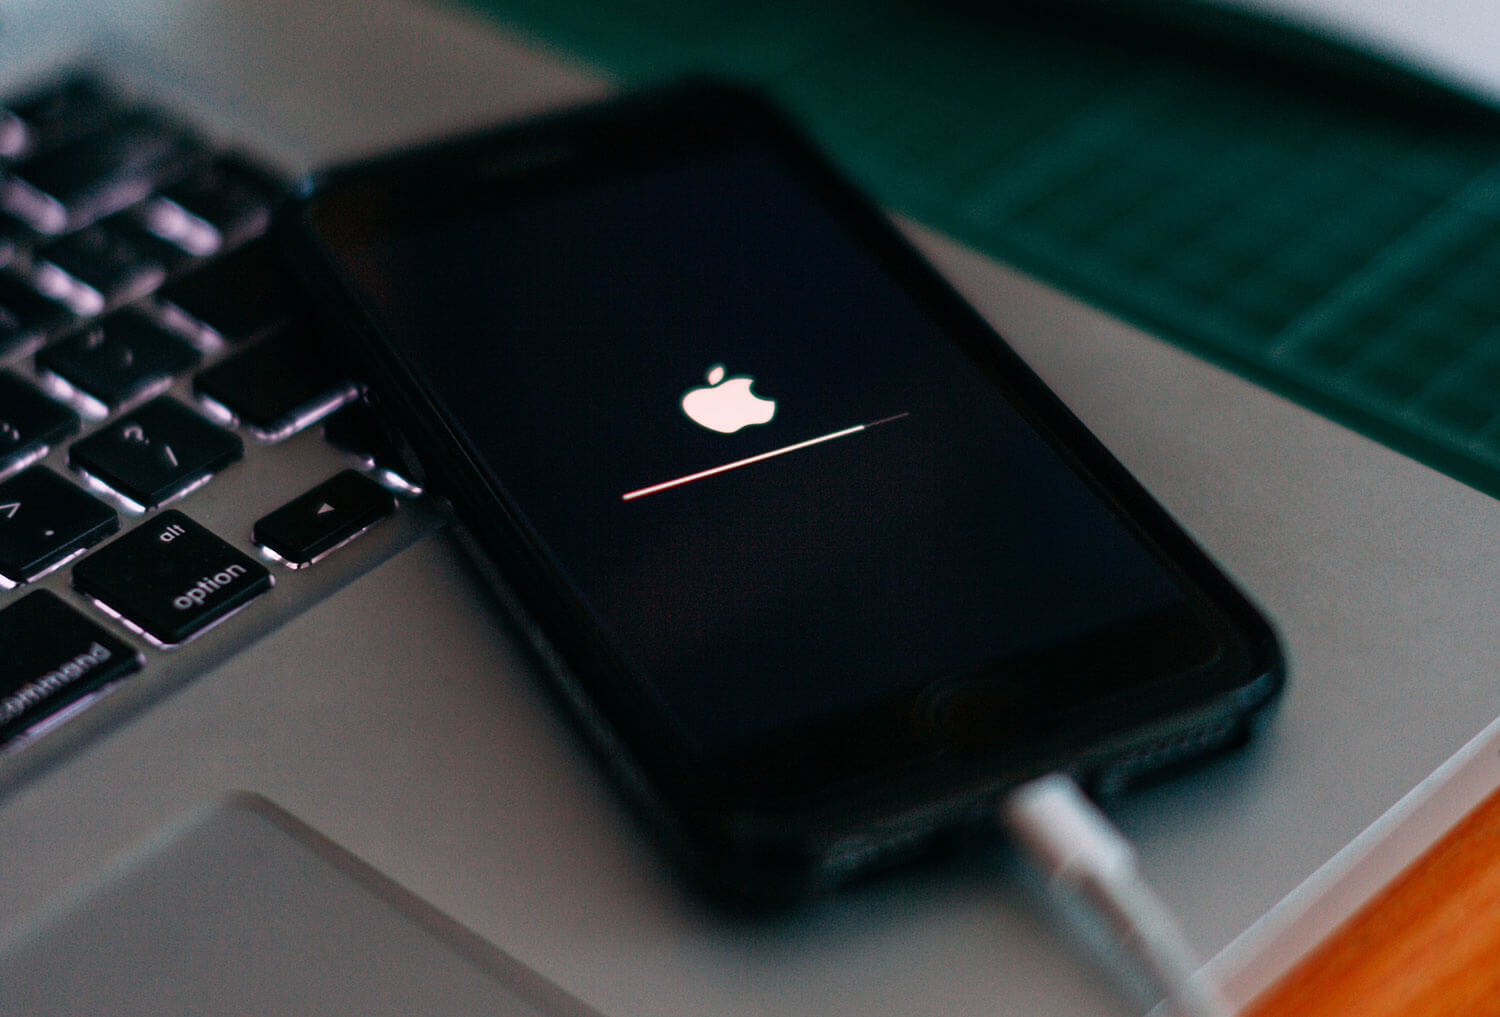 Foto de um iPhone ligado ao cabo, com a tela preta e o logo da maçã